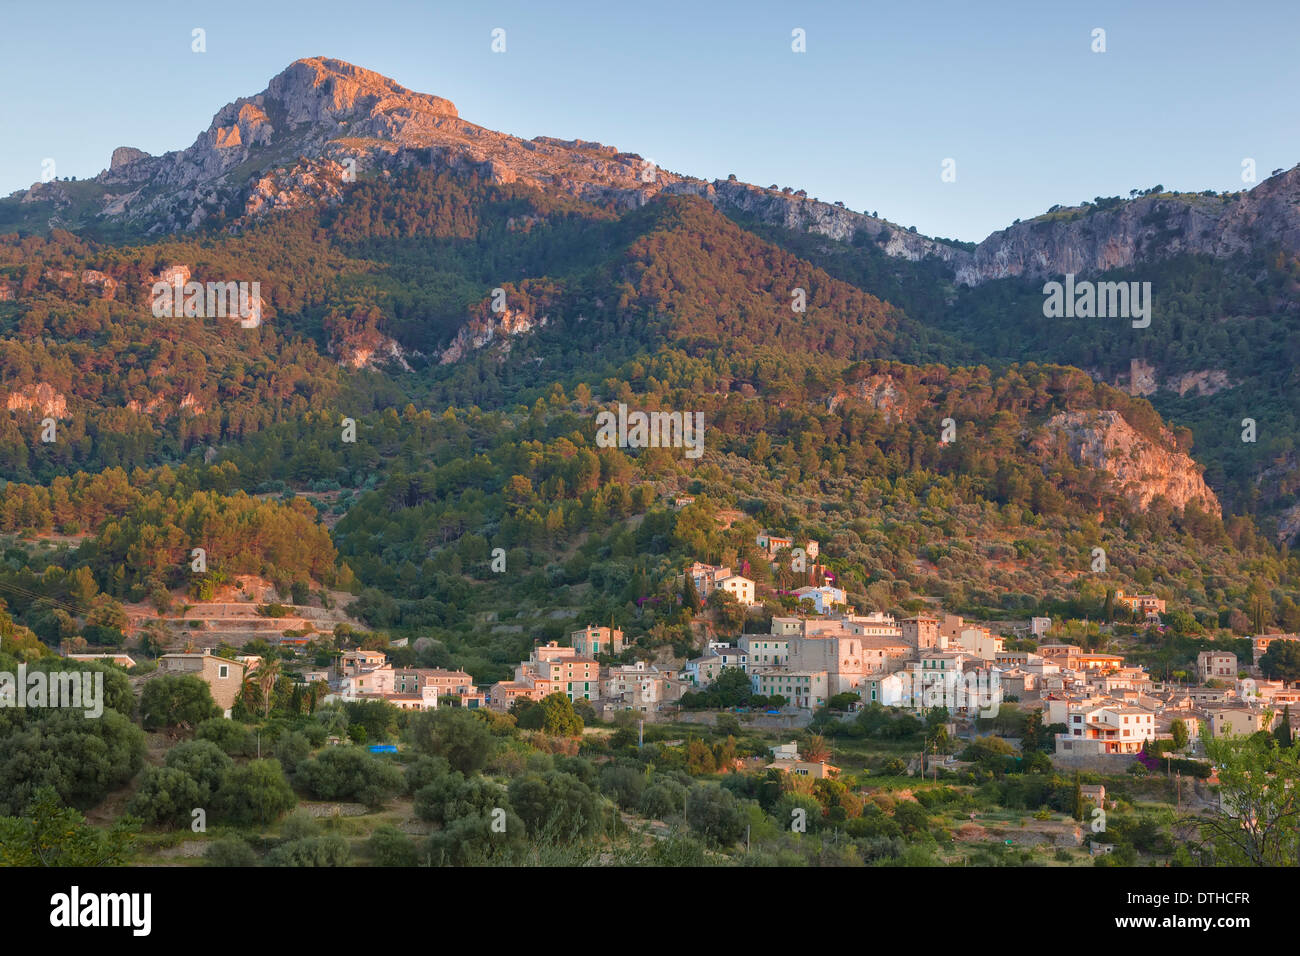 Estellencs village at the foot of Puig de Galatzó, Tramuntana mountains. Summer sunset. Balearic islands, Spain Stock Photo